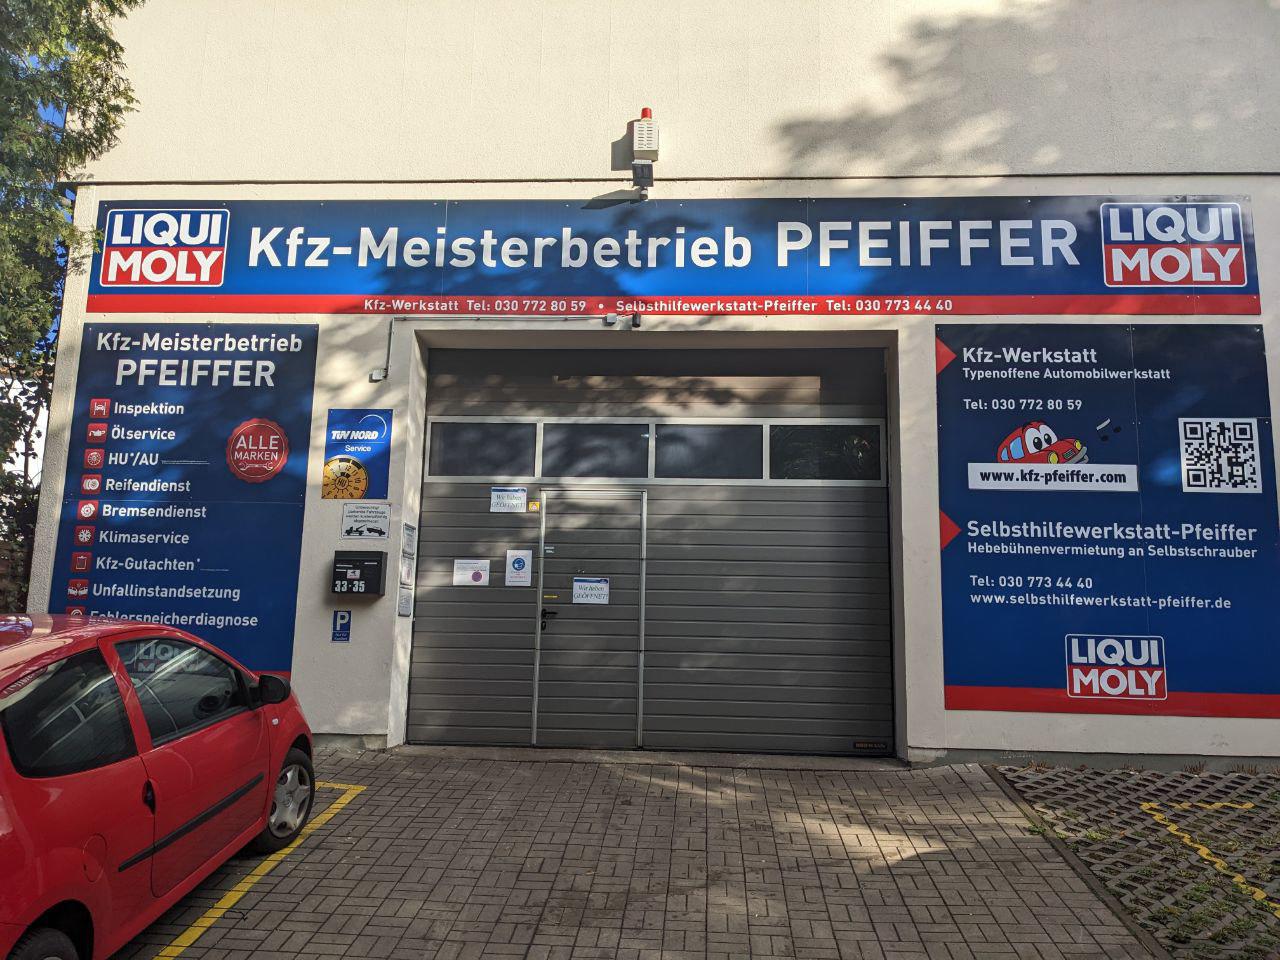 Kfz.-Meisterbetrieb Pfeiffer, Autoreparaturwerkstatt (Jürgen und Marcus Pfeiffer GbR), Elisabethstraße 33-35 in Berlin